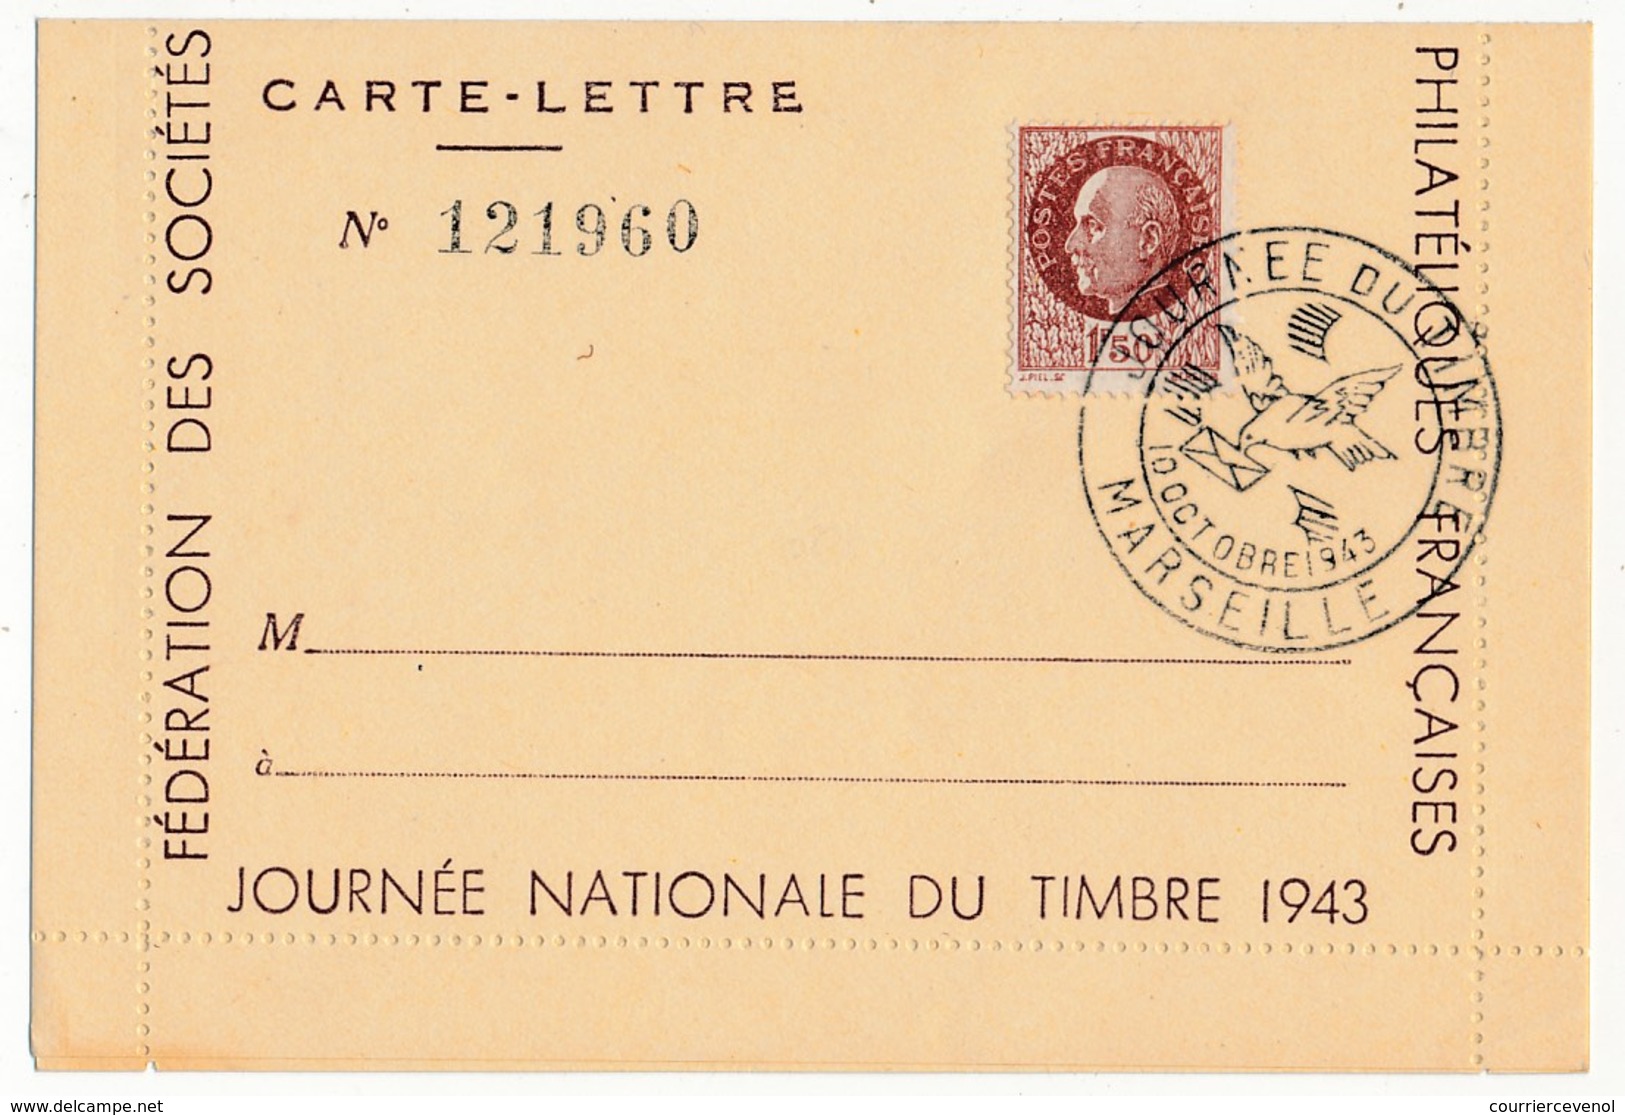 FRANCE - Carte-lettre Illustrée - Journée Du Timbre 1943 MARSEILLE - Dessin DRAIM - Affr 1,50 Bersier, Cachet Temporaire - Stamp's Day